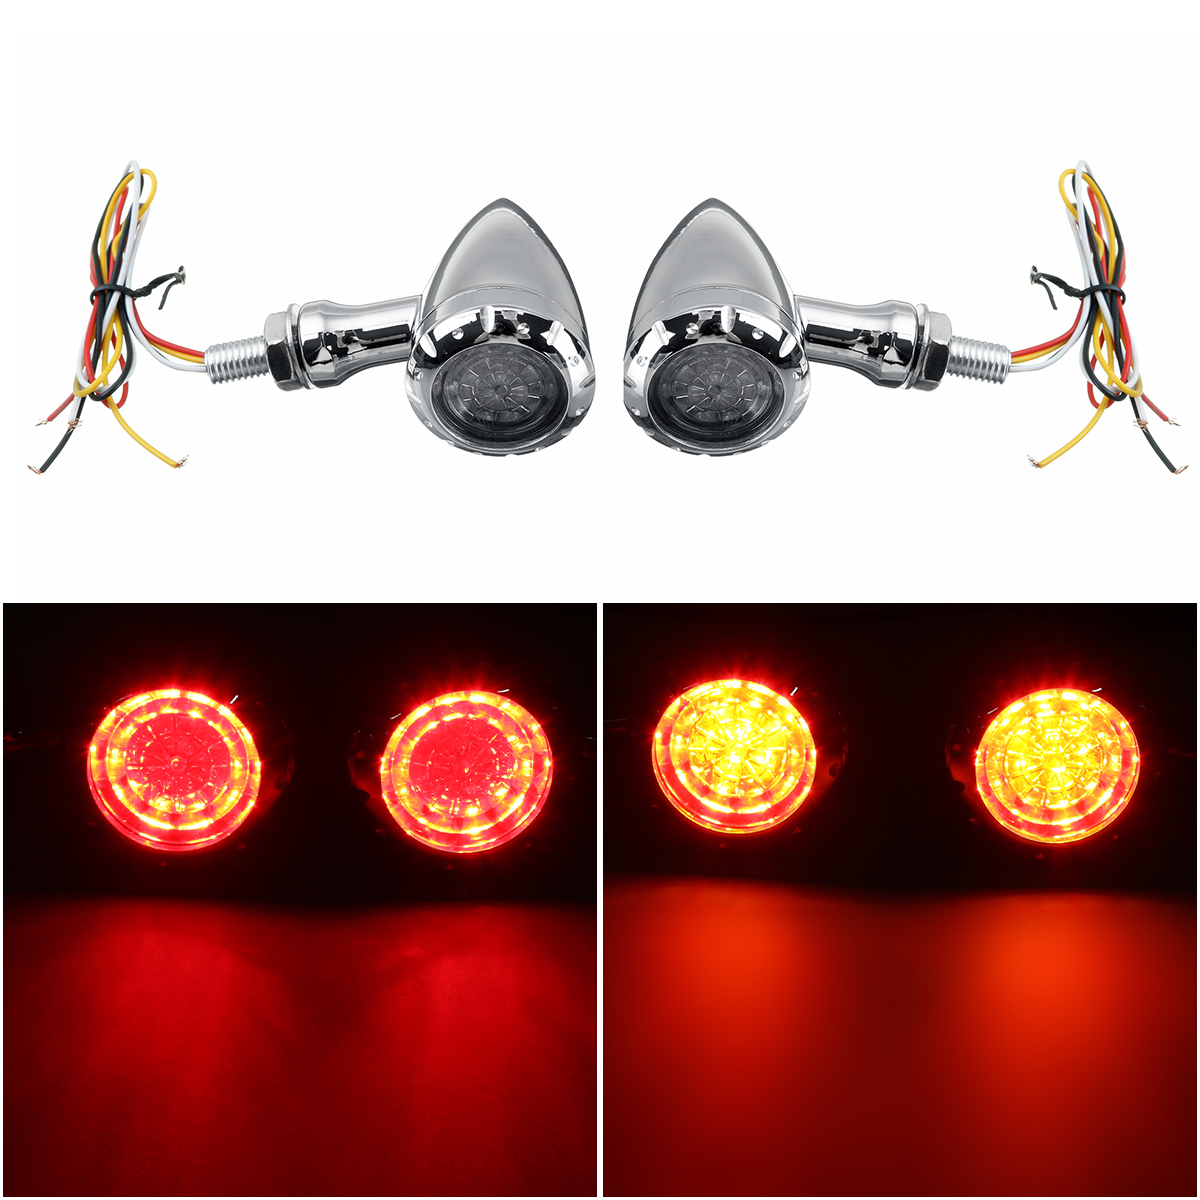 

12V LED Turn Signals Brake Blinker Lights For Harley Chopper Indicator Light